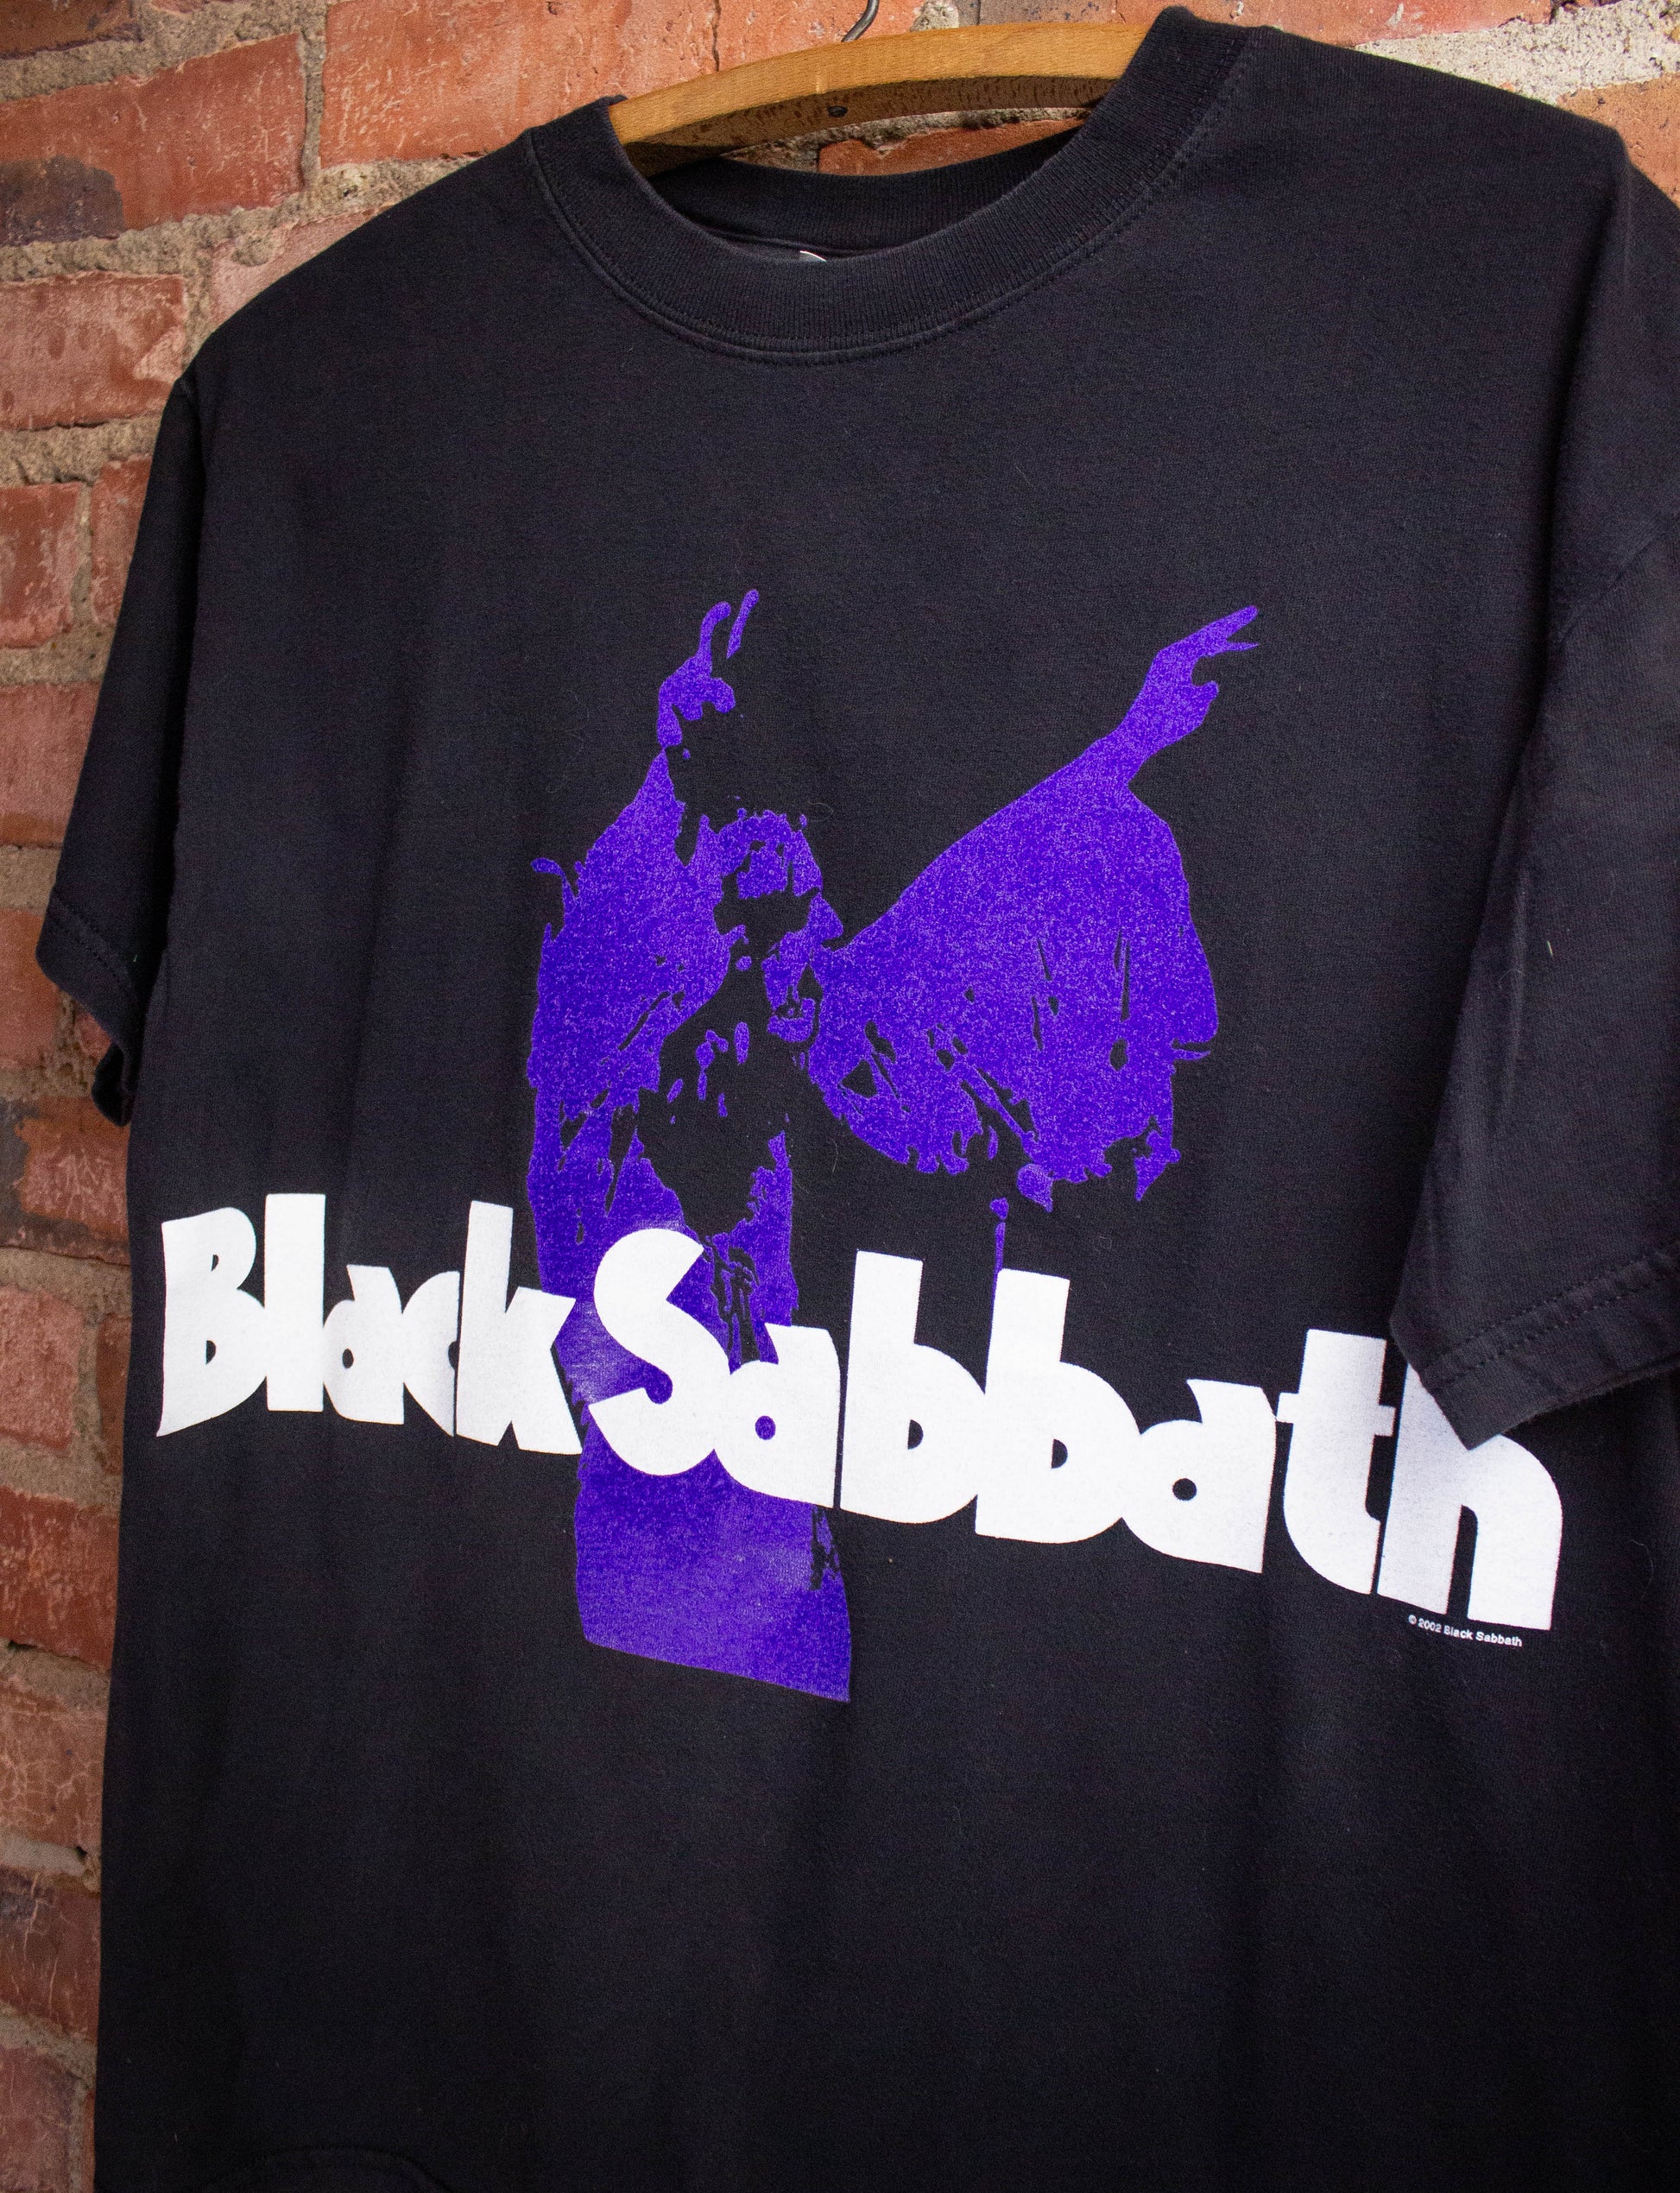 Vintage Black Sabbath Concert T-Shirt 2002 M